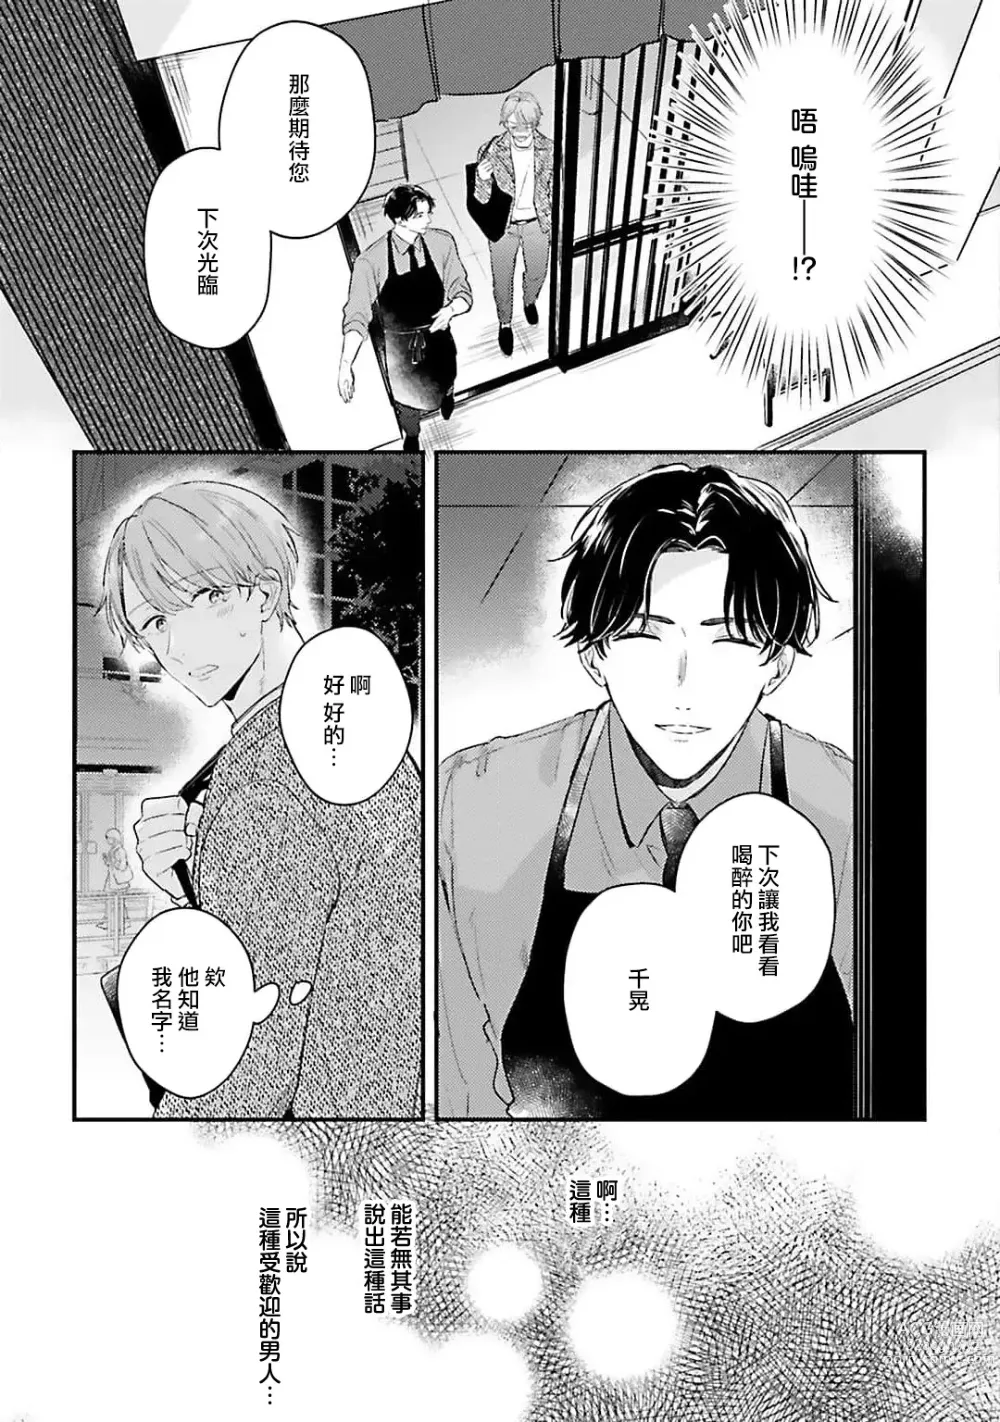 Page 14 of manga 绽放的恋爱皆为醉与甜1